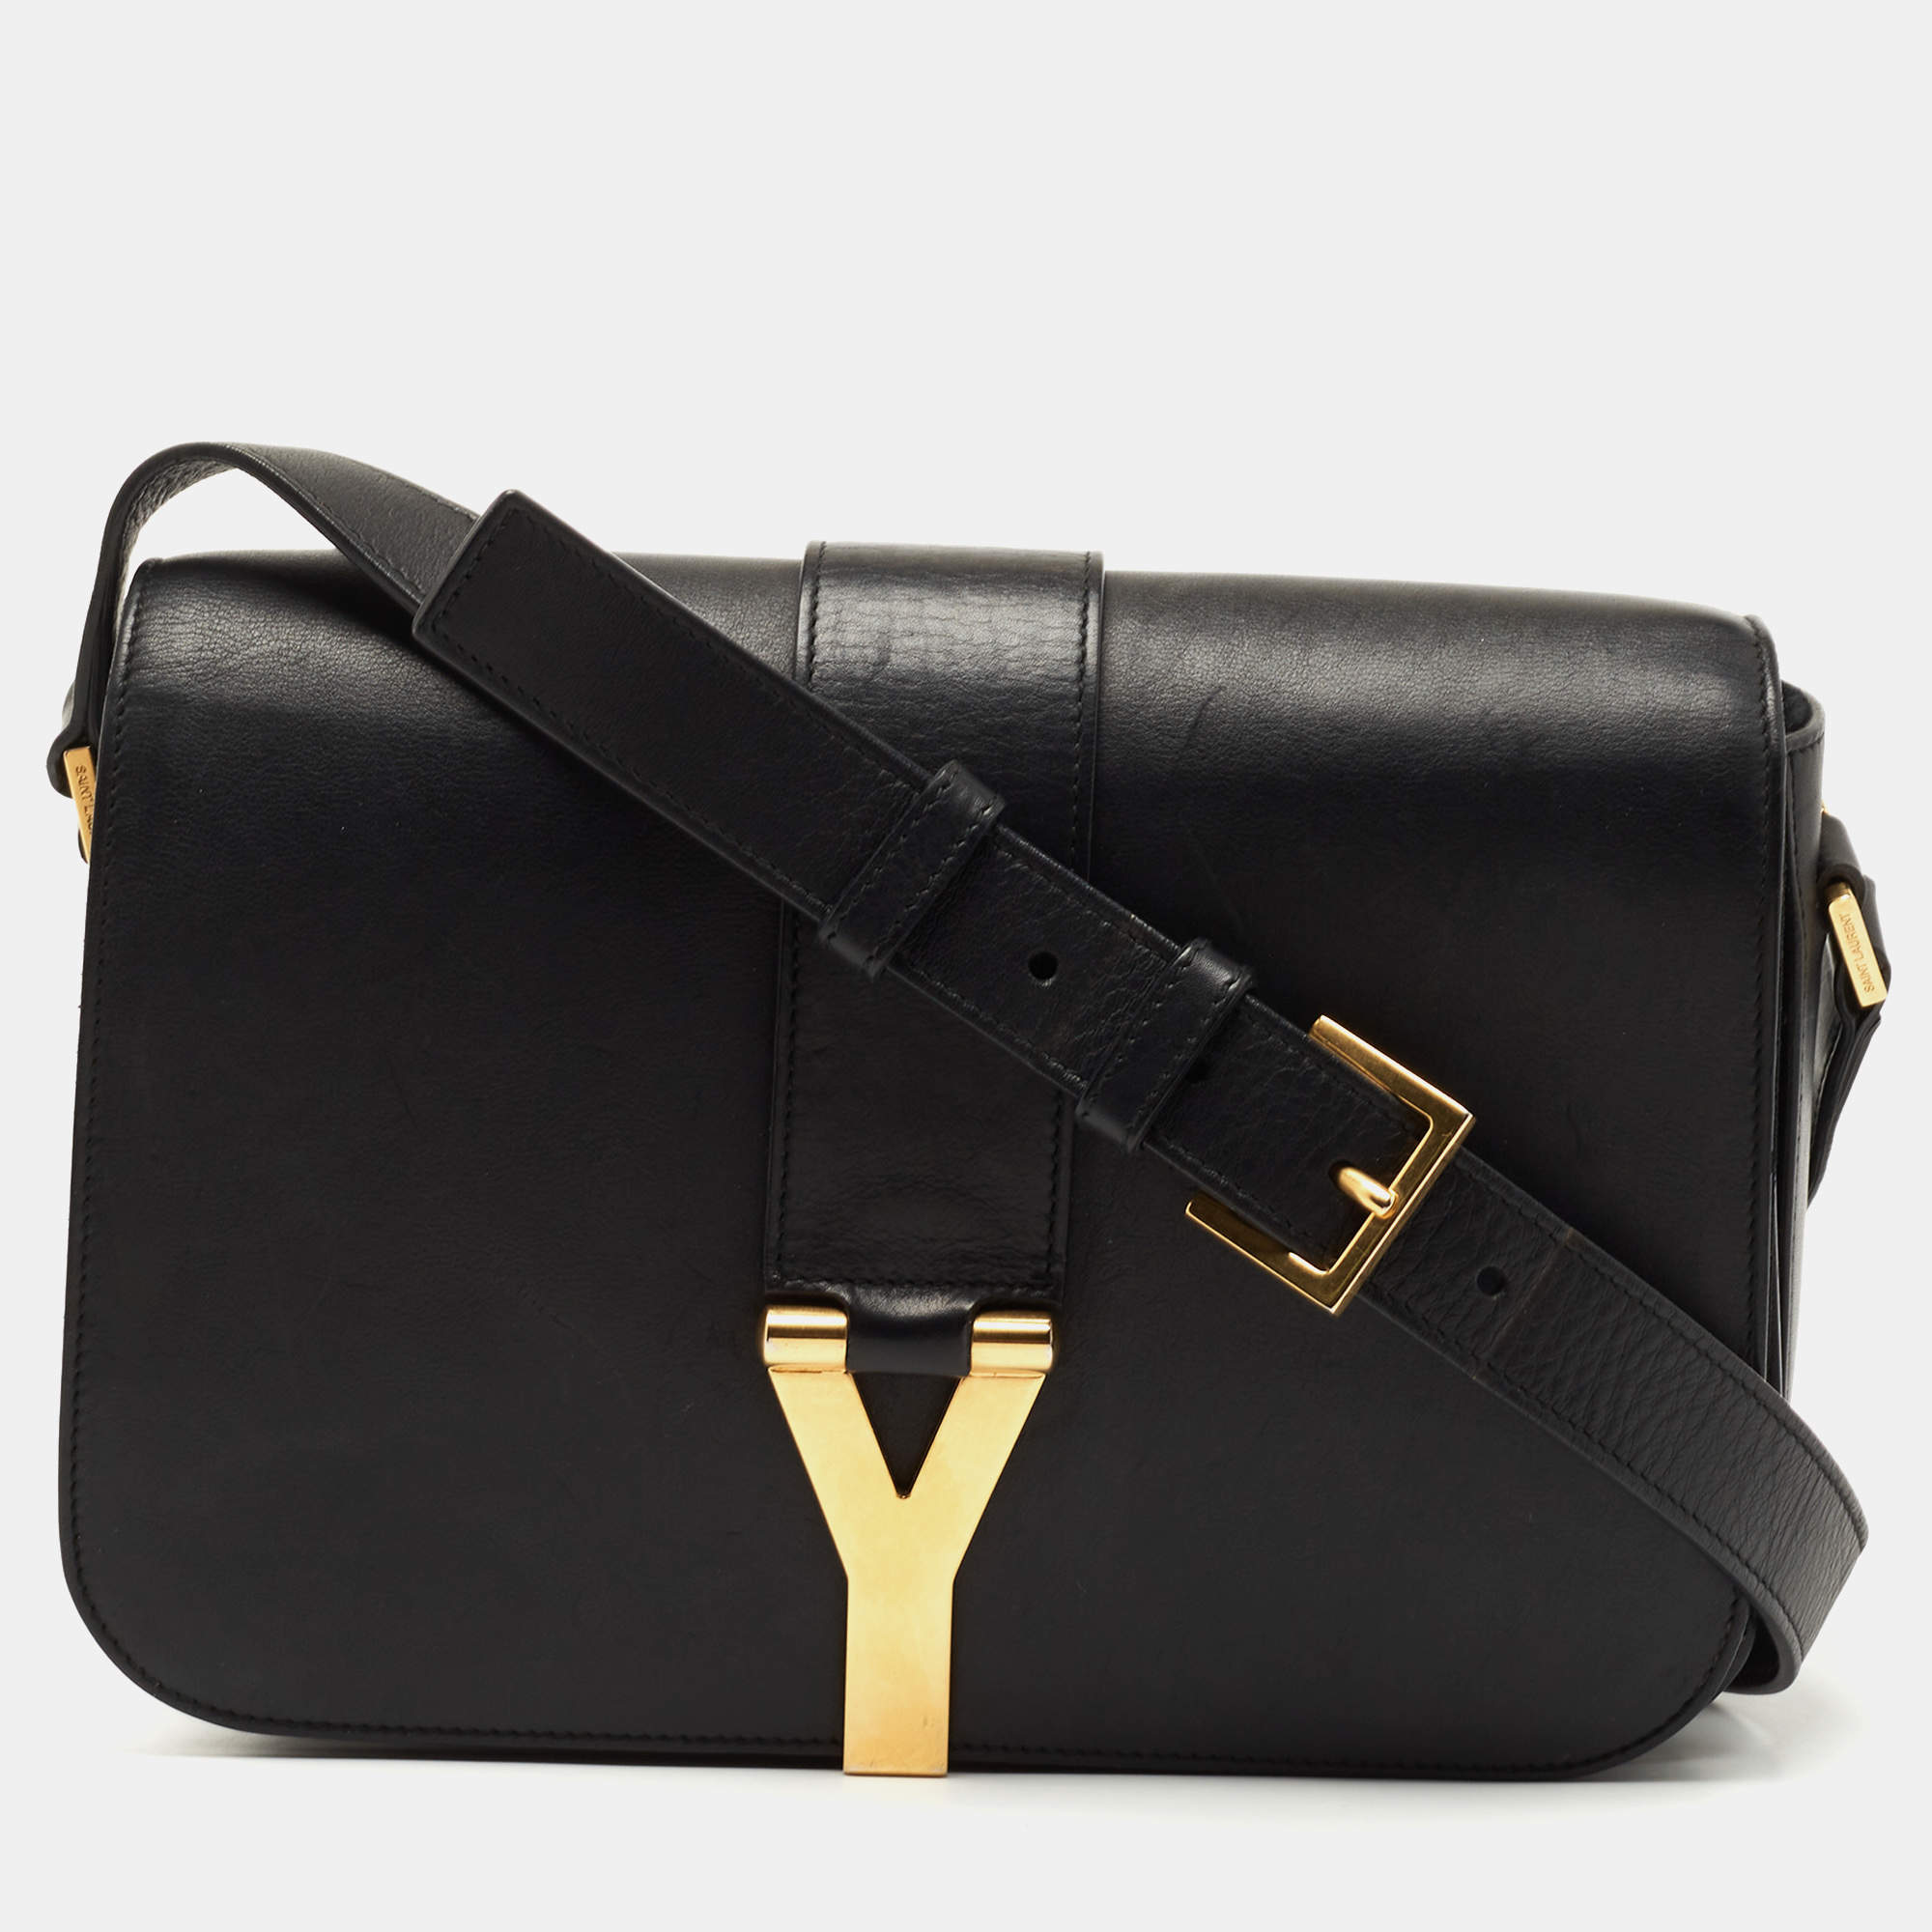 SAINT LAURENT: Sac de Jour leather bag - Black | SAINT LAURENT mini bag  39203502G9W online at GIGLIO.COM